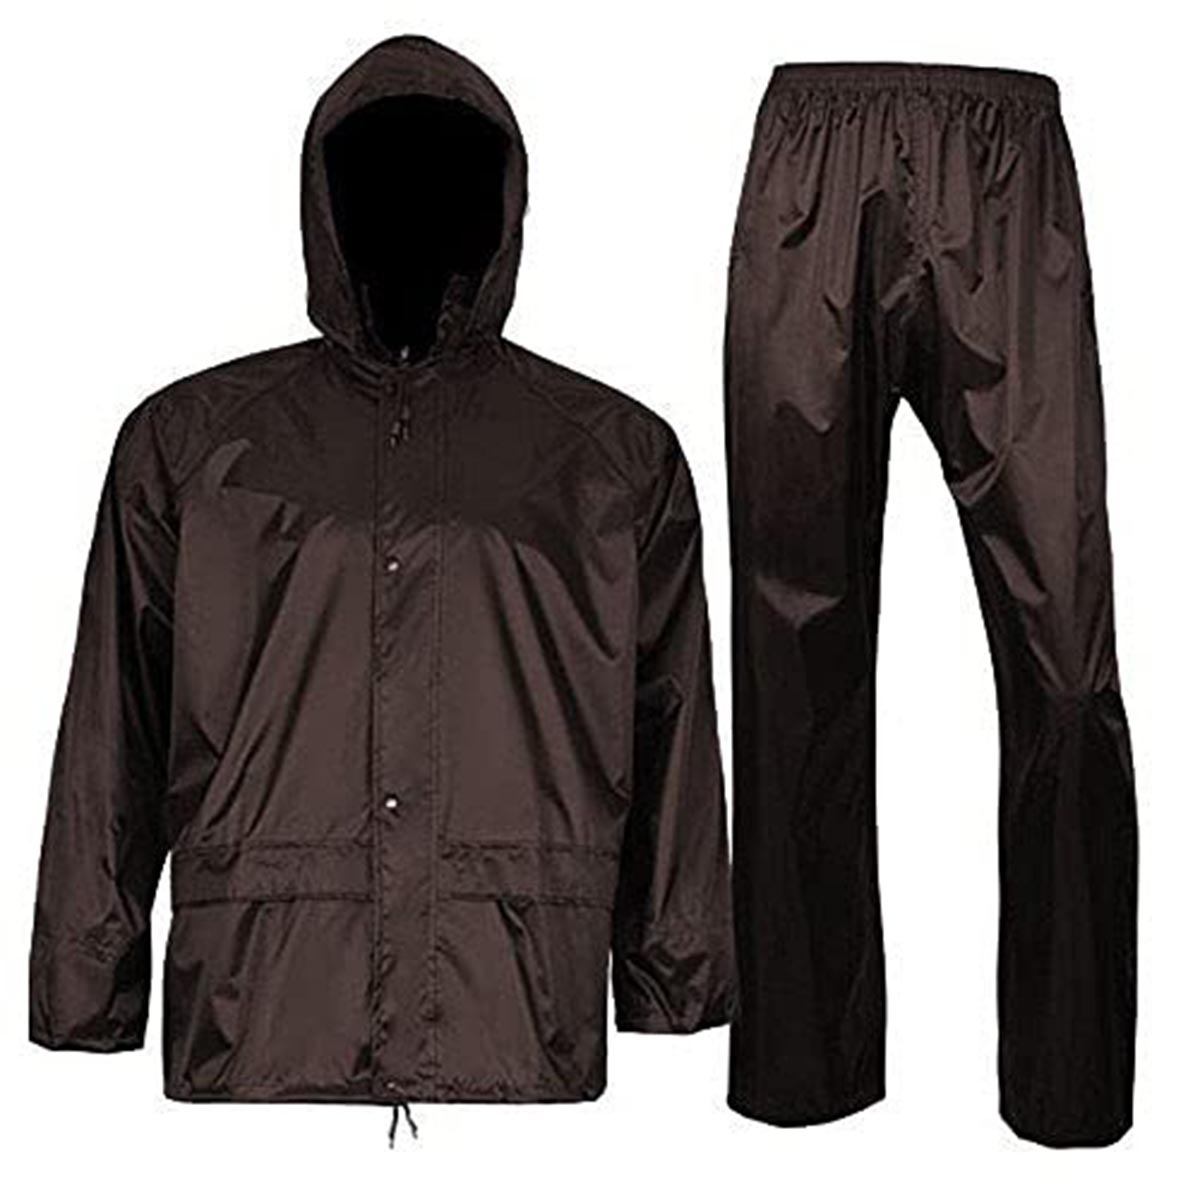 Romano nx 100% Waterproof Heavy Duty Double Layer Hooded Rain Suit Men in a Storage Bag romanonx.com 